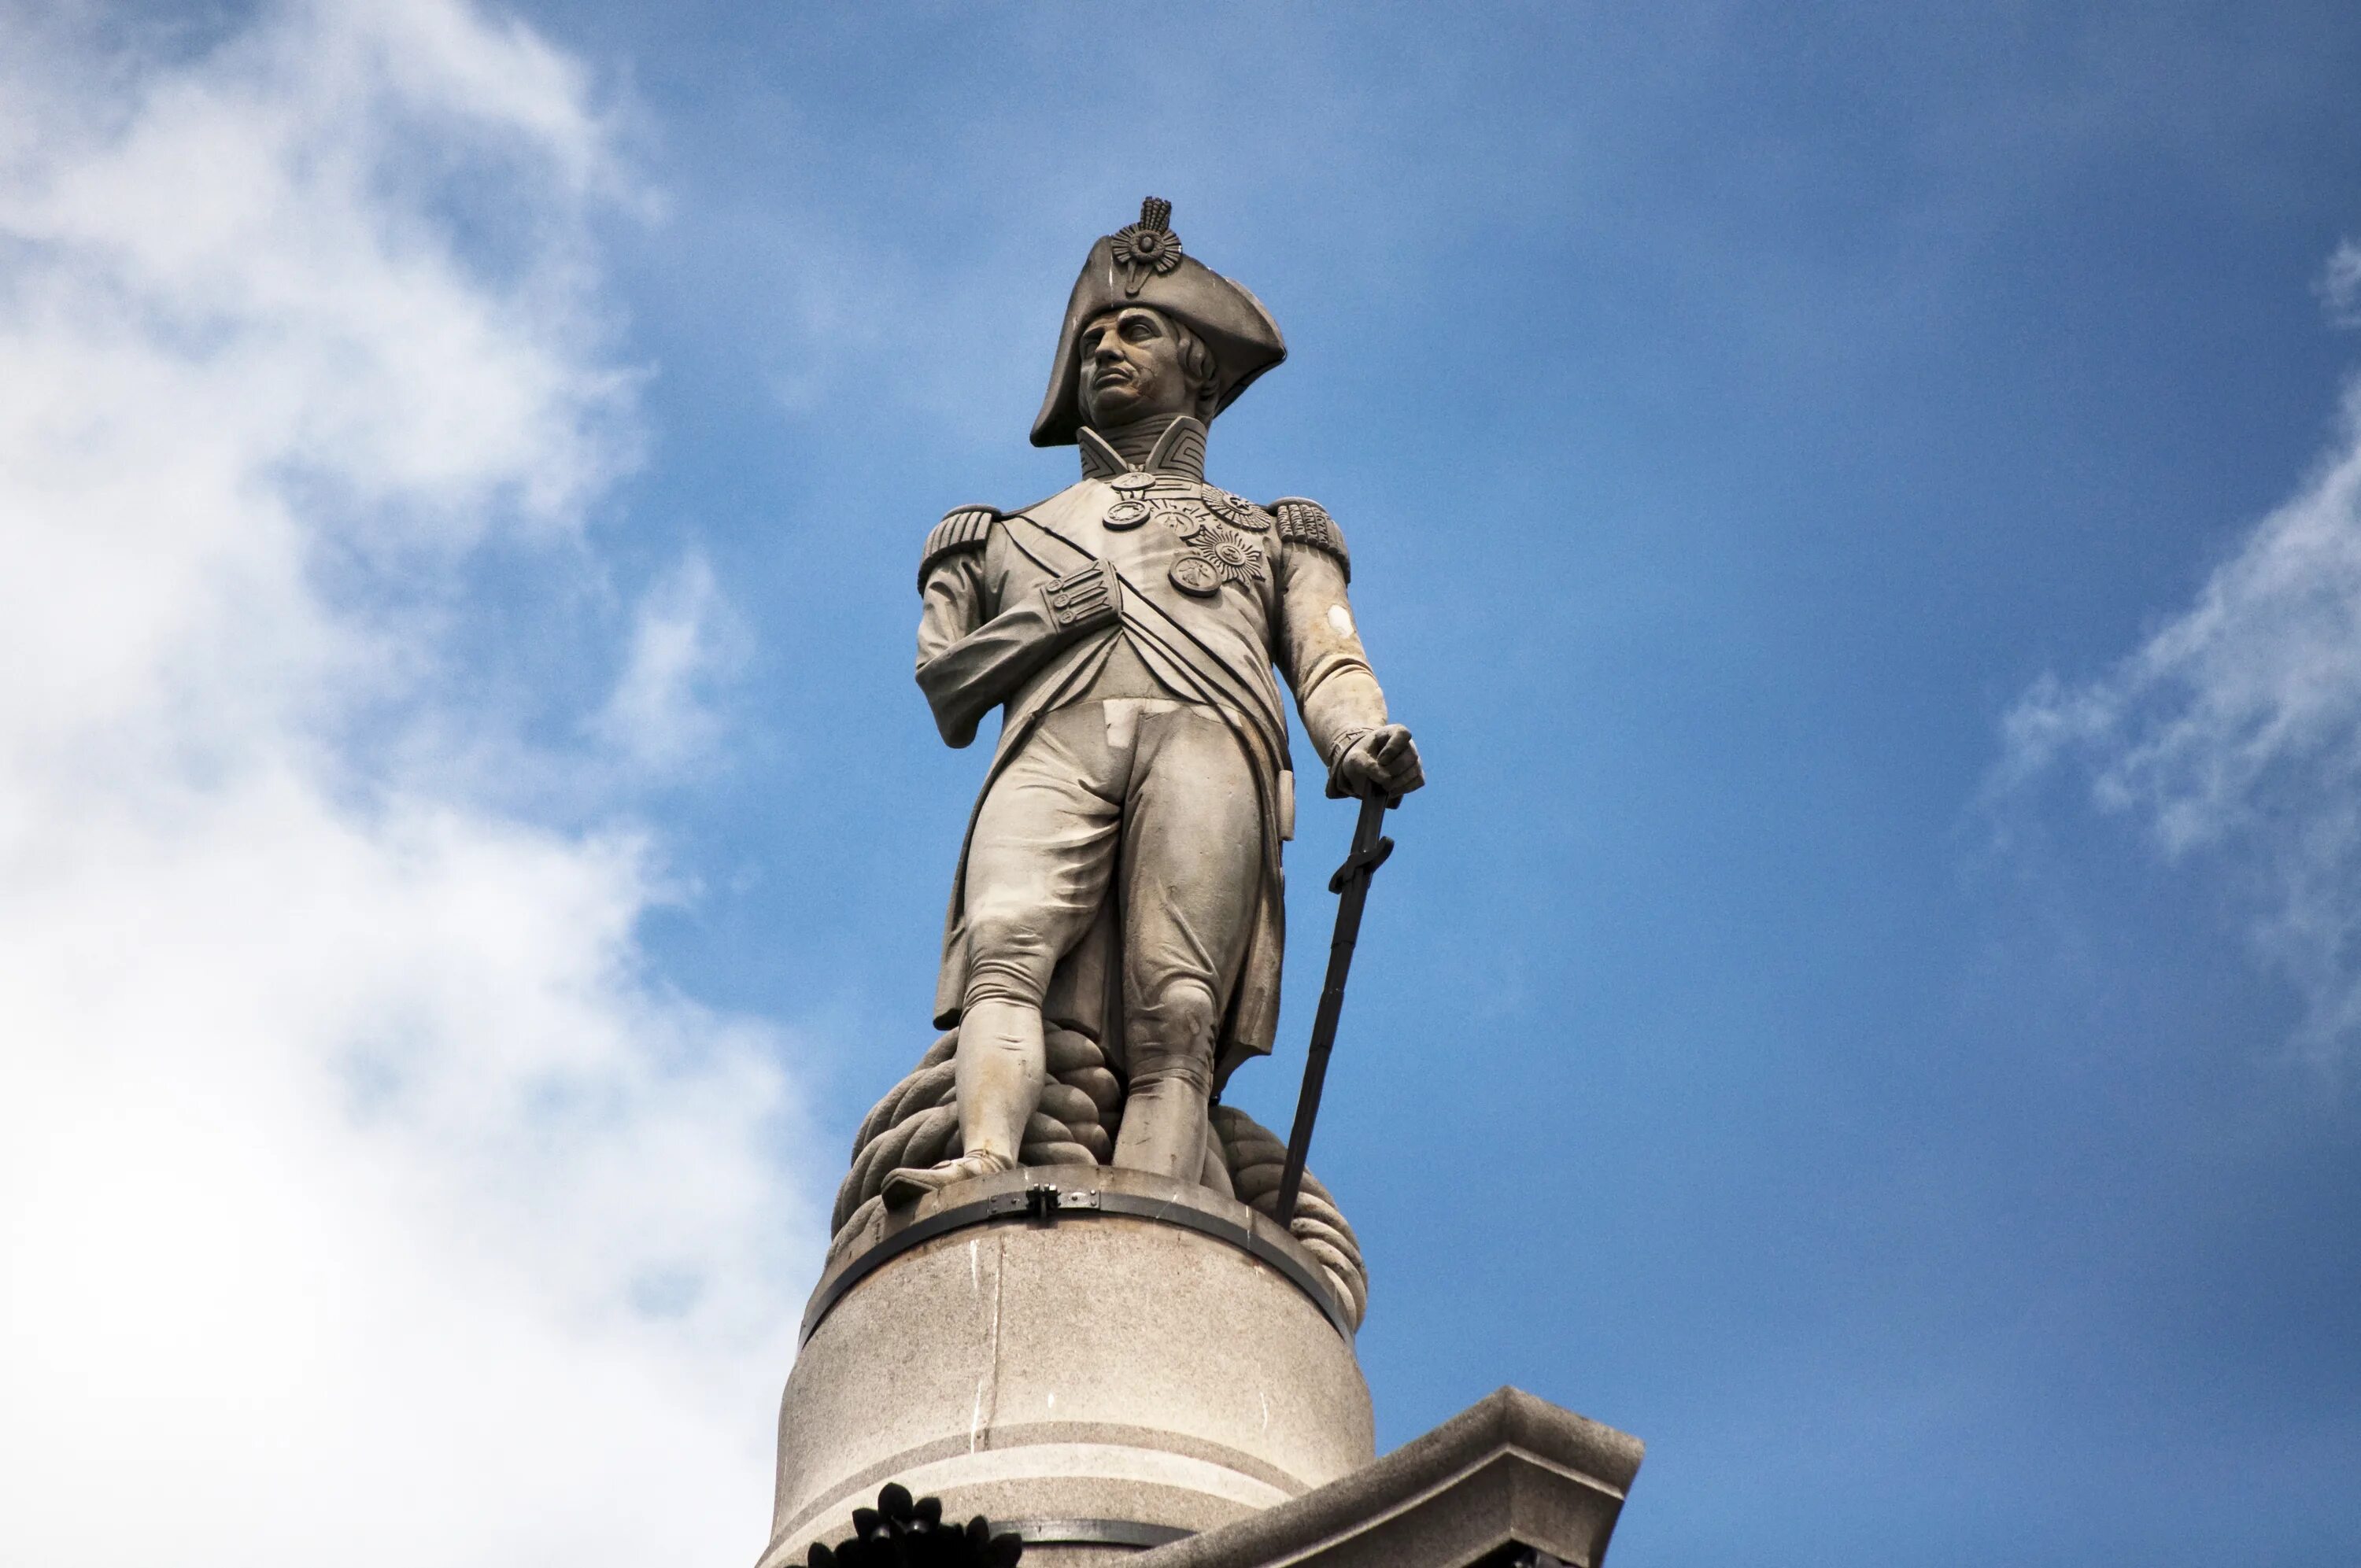 Статуя Адмирала Нельсона. Колонна Адмирала Нельсона. Памятник адмиралу Нельсону в Лондоне. Статуя Адмирала Нельсона в Лондоне.